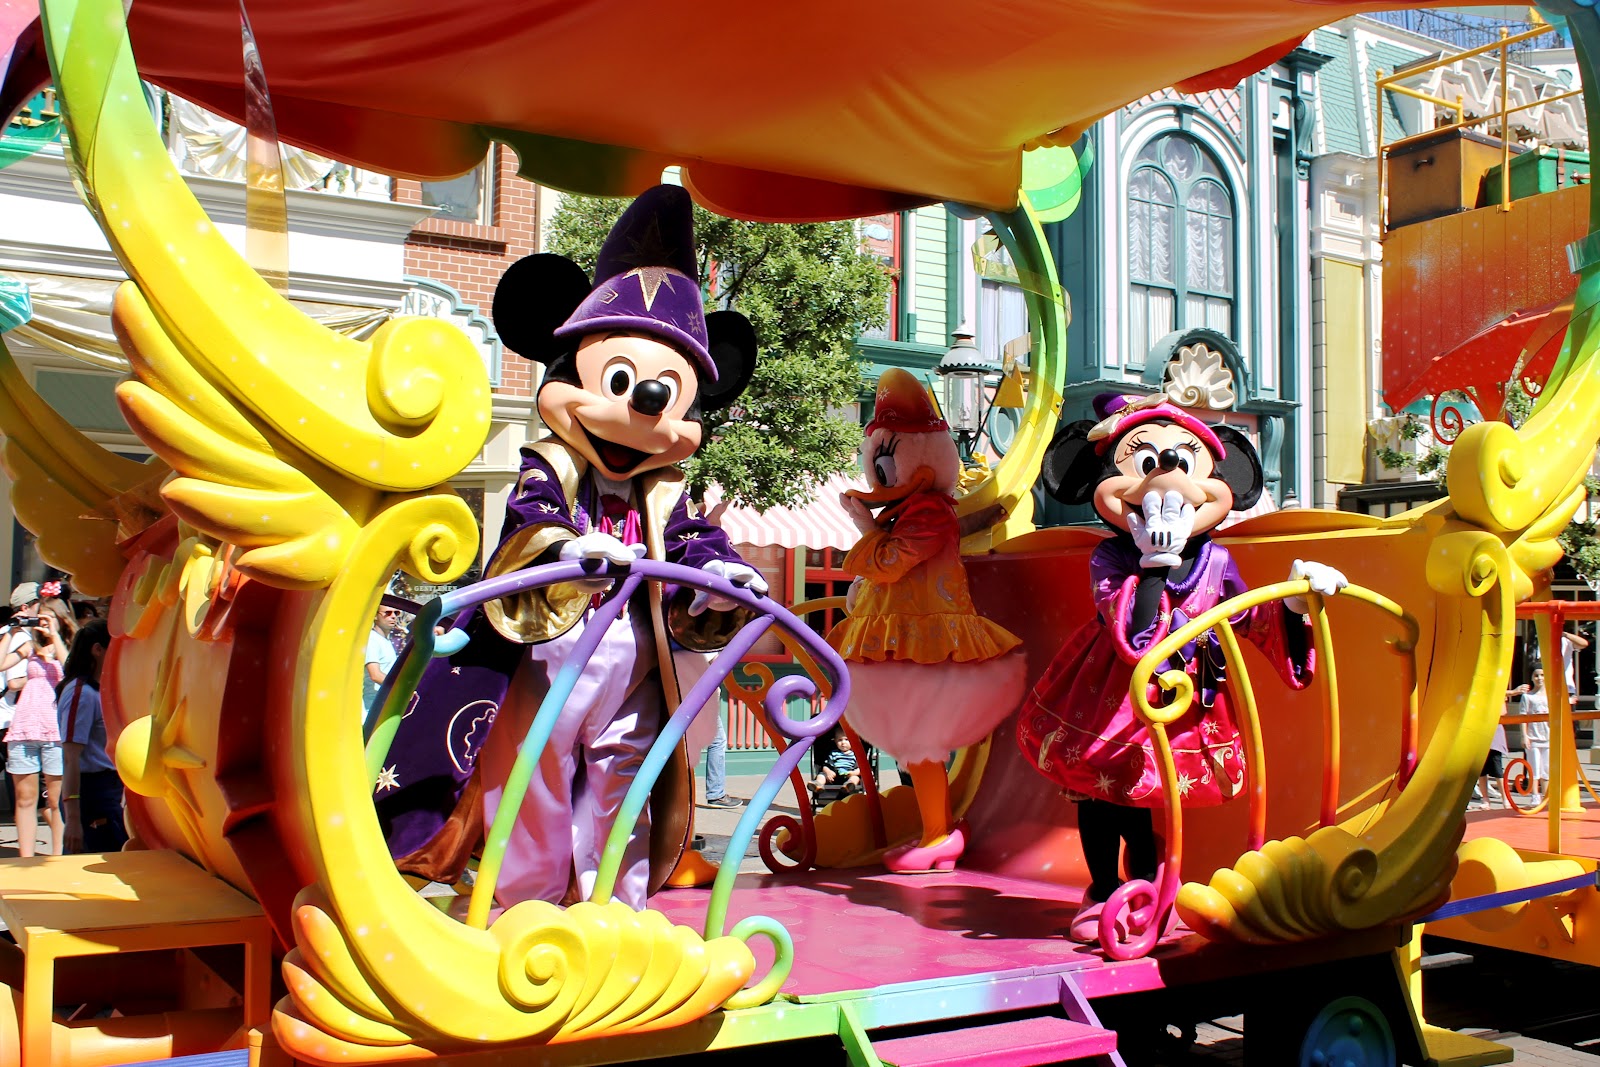 http://3.bp.blogspot.com/-guTBk_dMILI/UCaJxPo9lmI/AAAAAAAALzw/41_8dXjlYTQ/s1600/Disneyland+paris+parade+Minnie+Mickey+20th+year.jpg